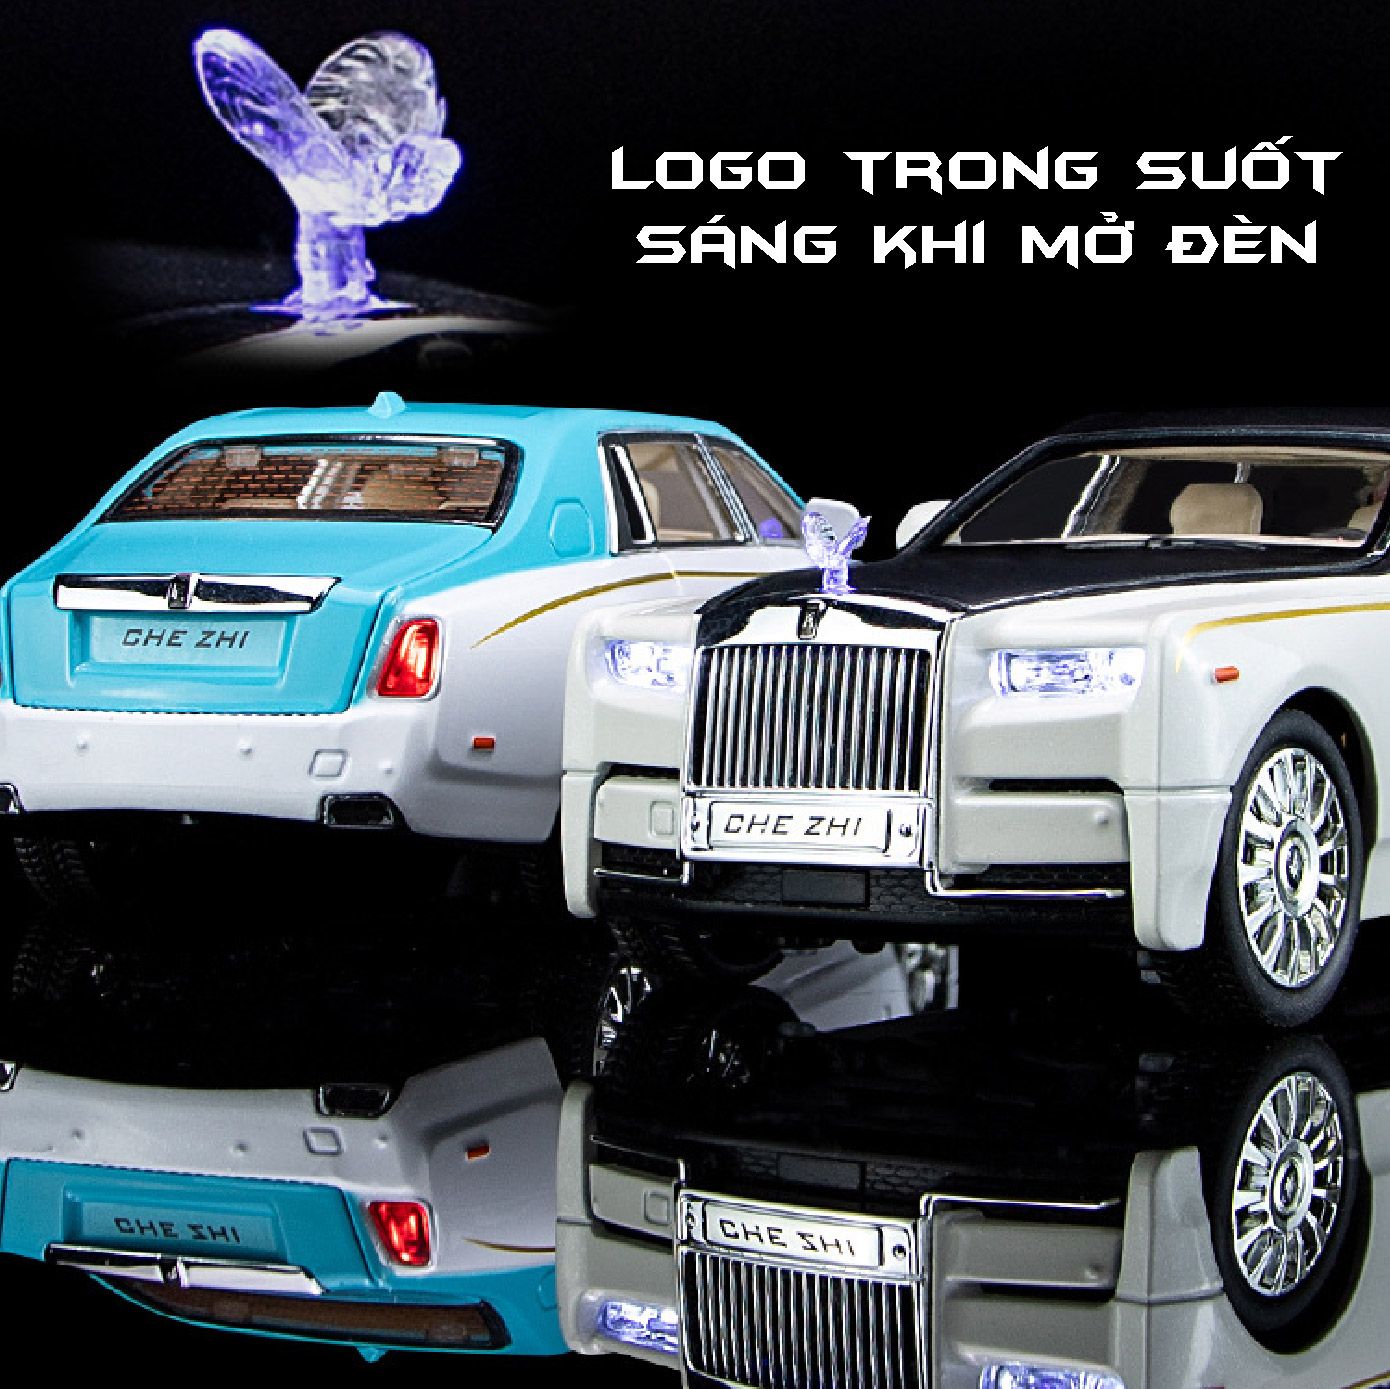  Mô hình xe Rolls Royce Phantom Trần Xe Bầu Trời Sao full open 1:24 Chezhi OT408 